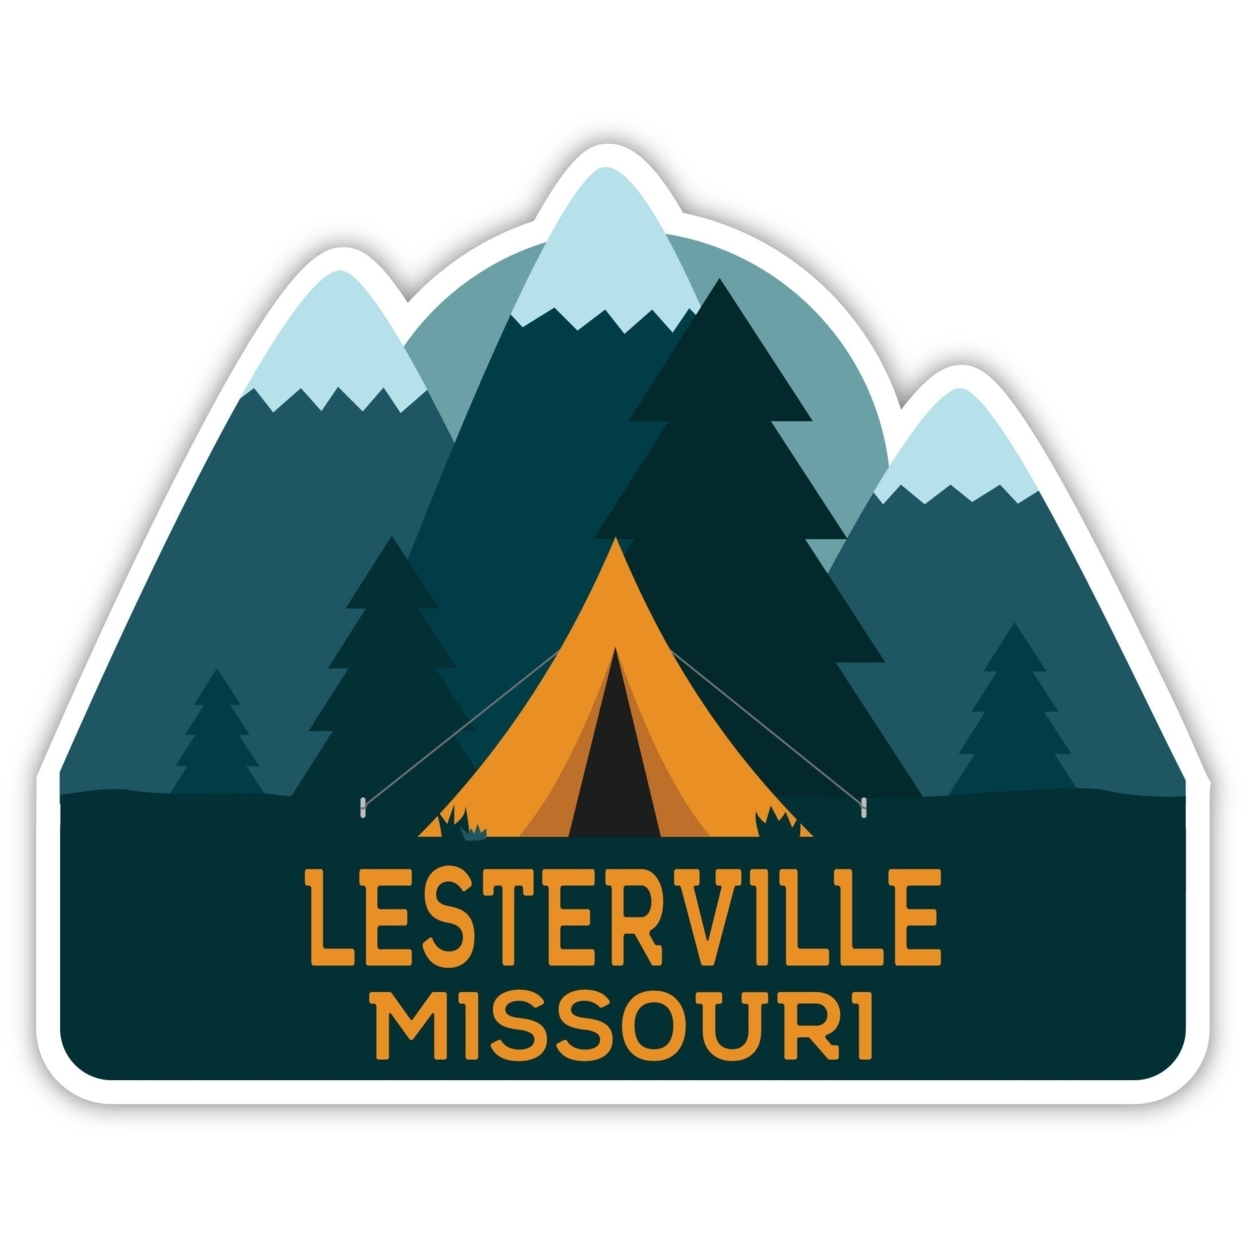 Lesterville Missouri Souvenir Decorative Stickers (Choose Theme And Size) - 2-Inch, Tent